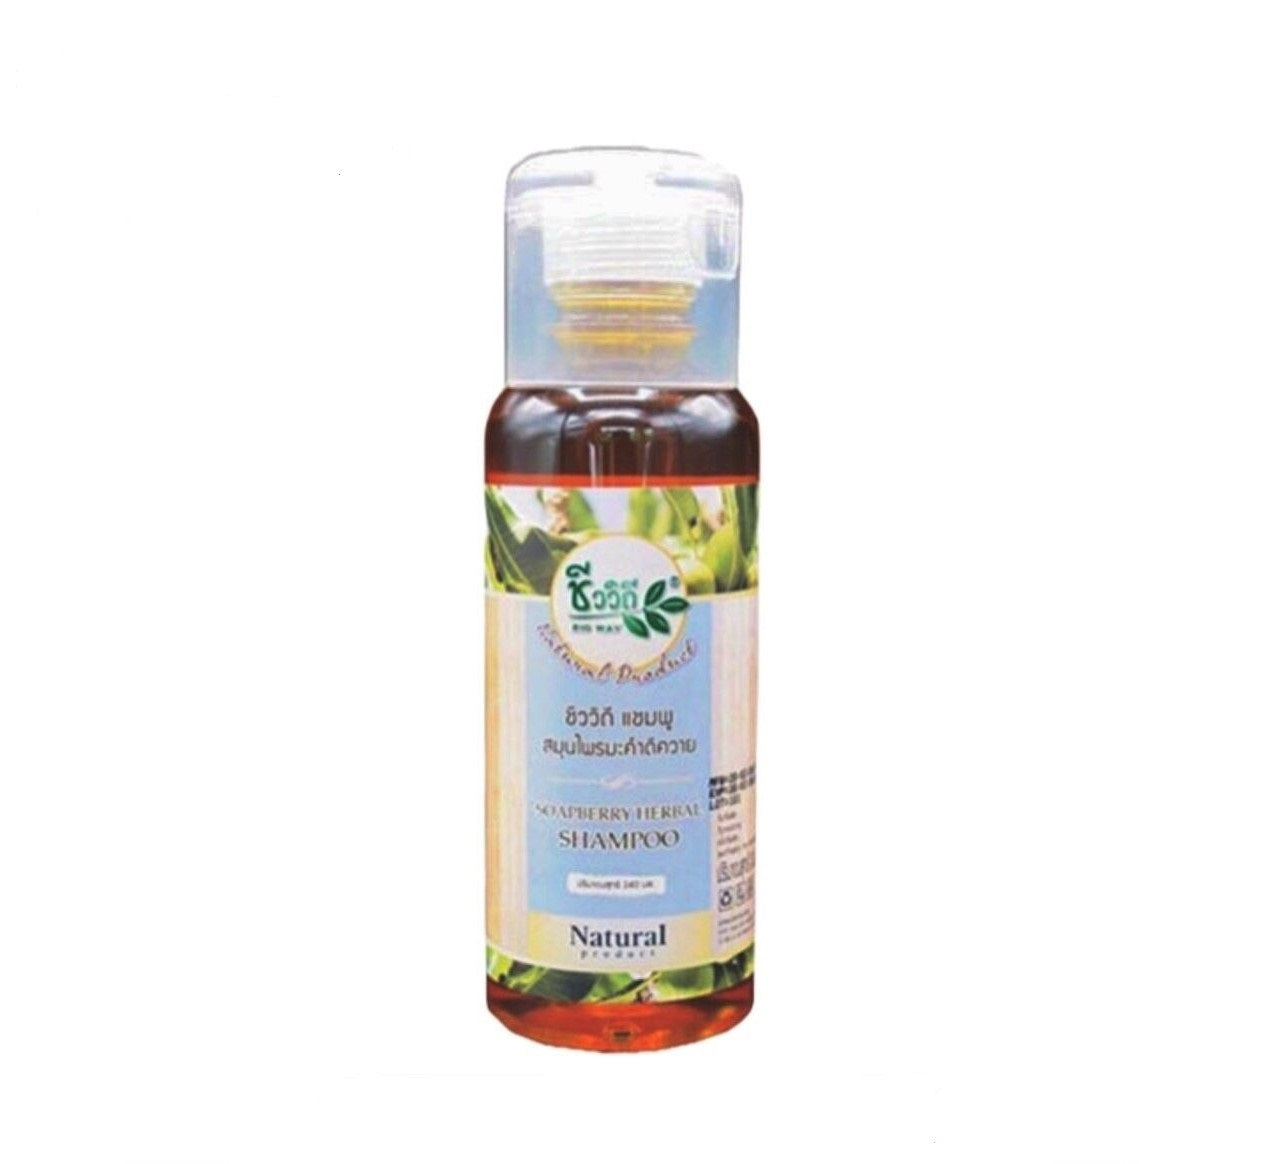 Bio Way Soapberry Herbal Shampoo (240 ml)